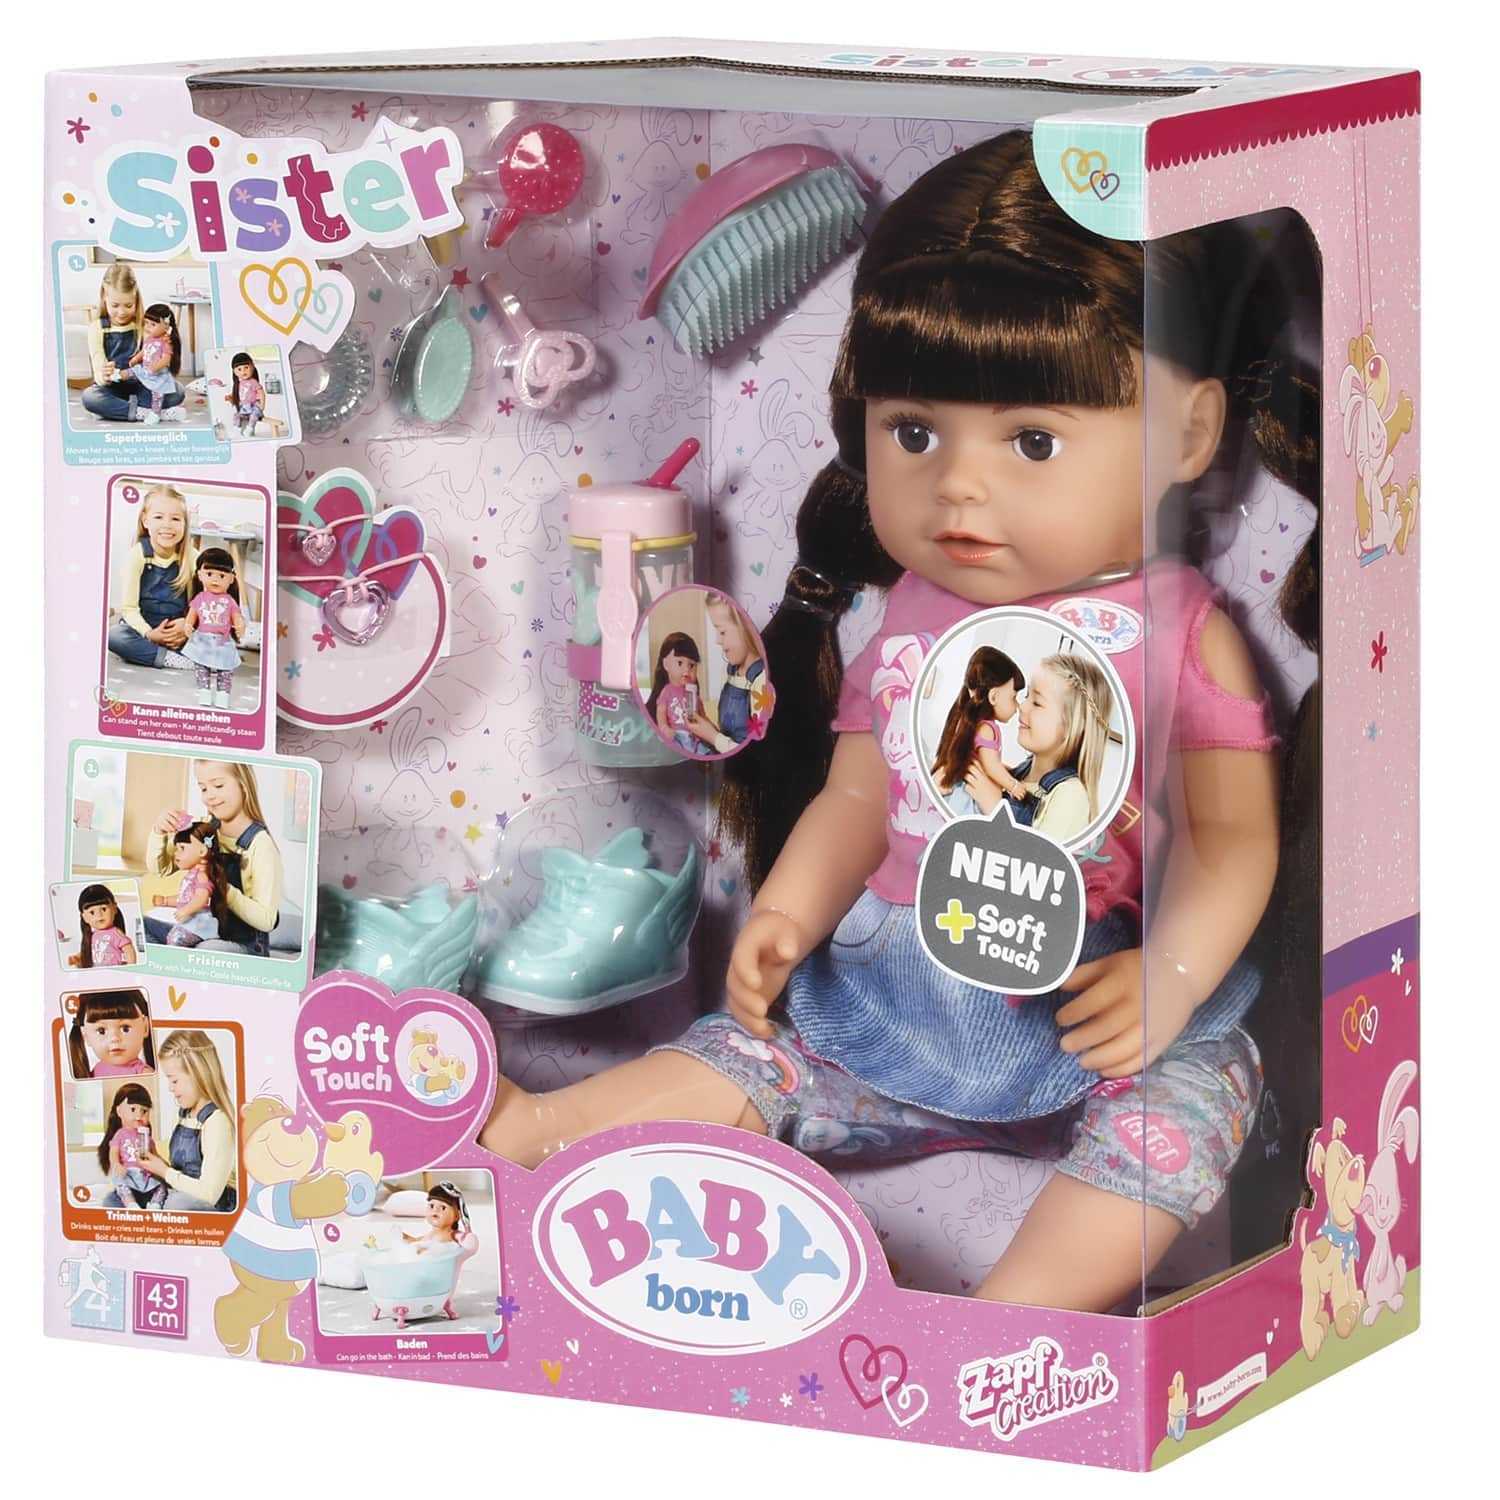 Интерактивная кукла Baby Born Annabell - короткий но максимально информативный обзор Для большего удобства добавлены характеристики отзывы и видео